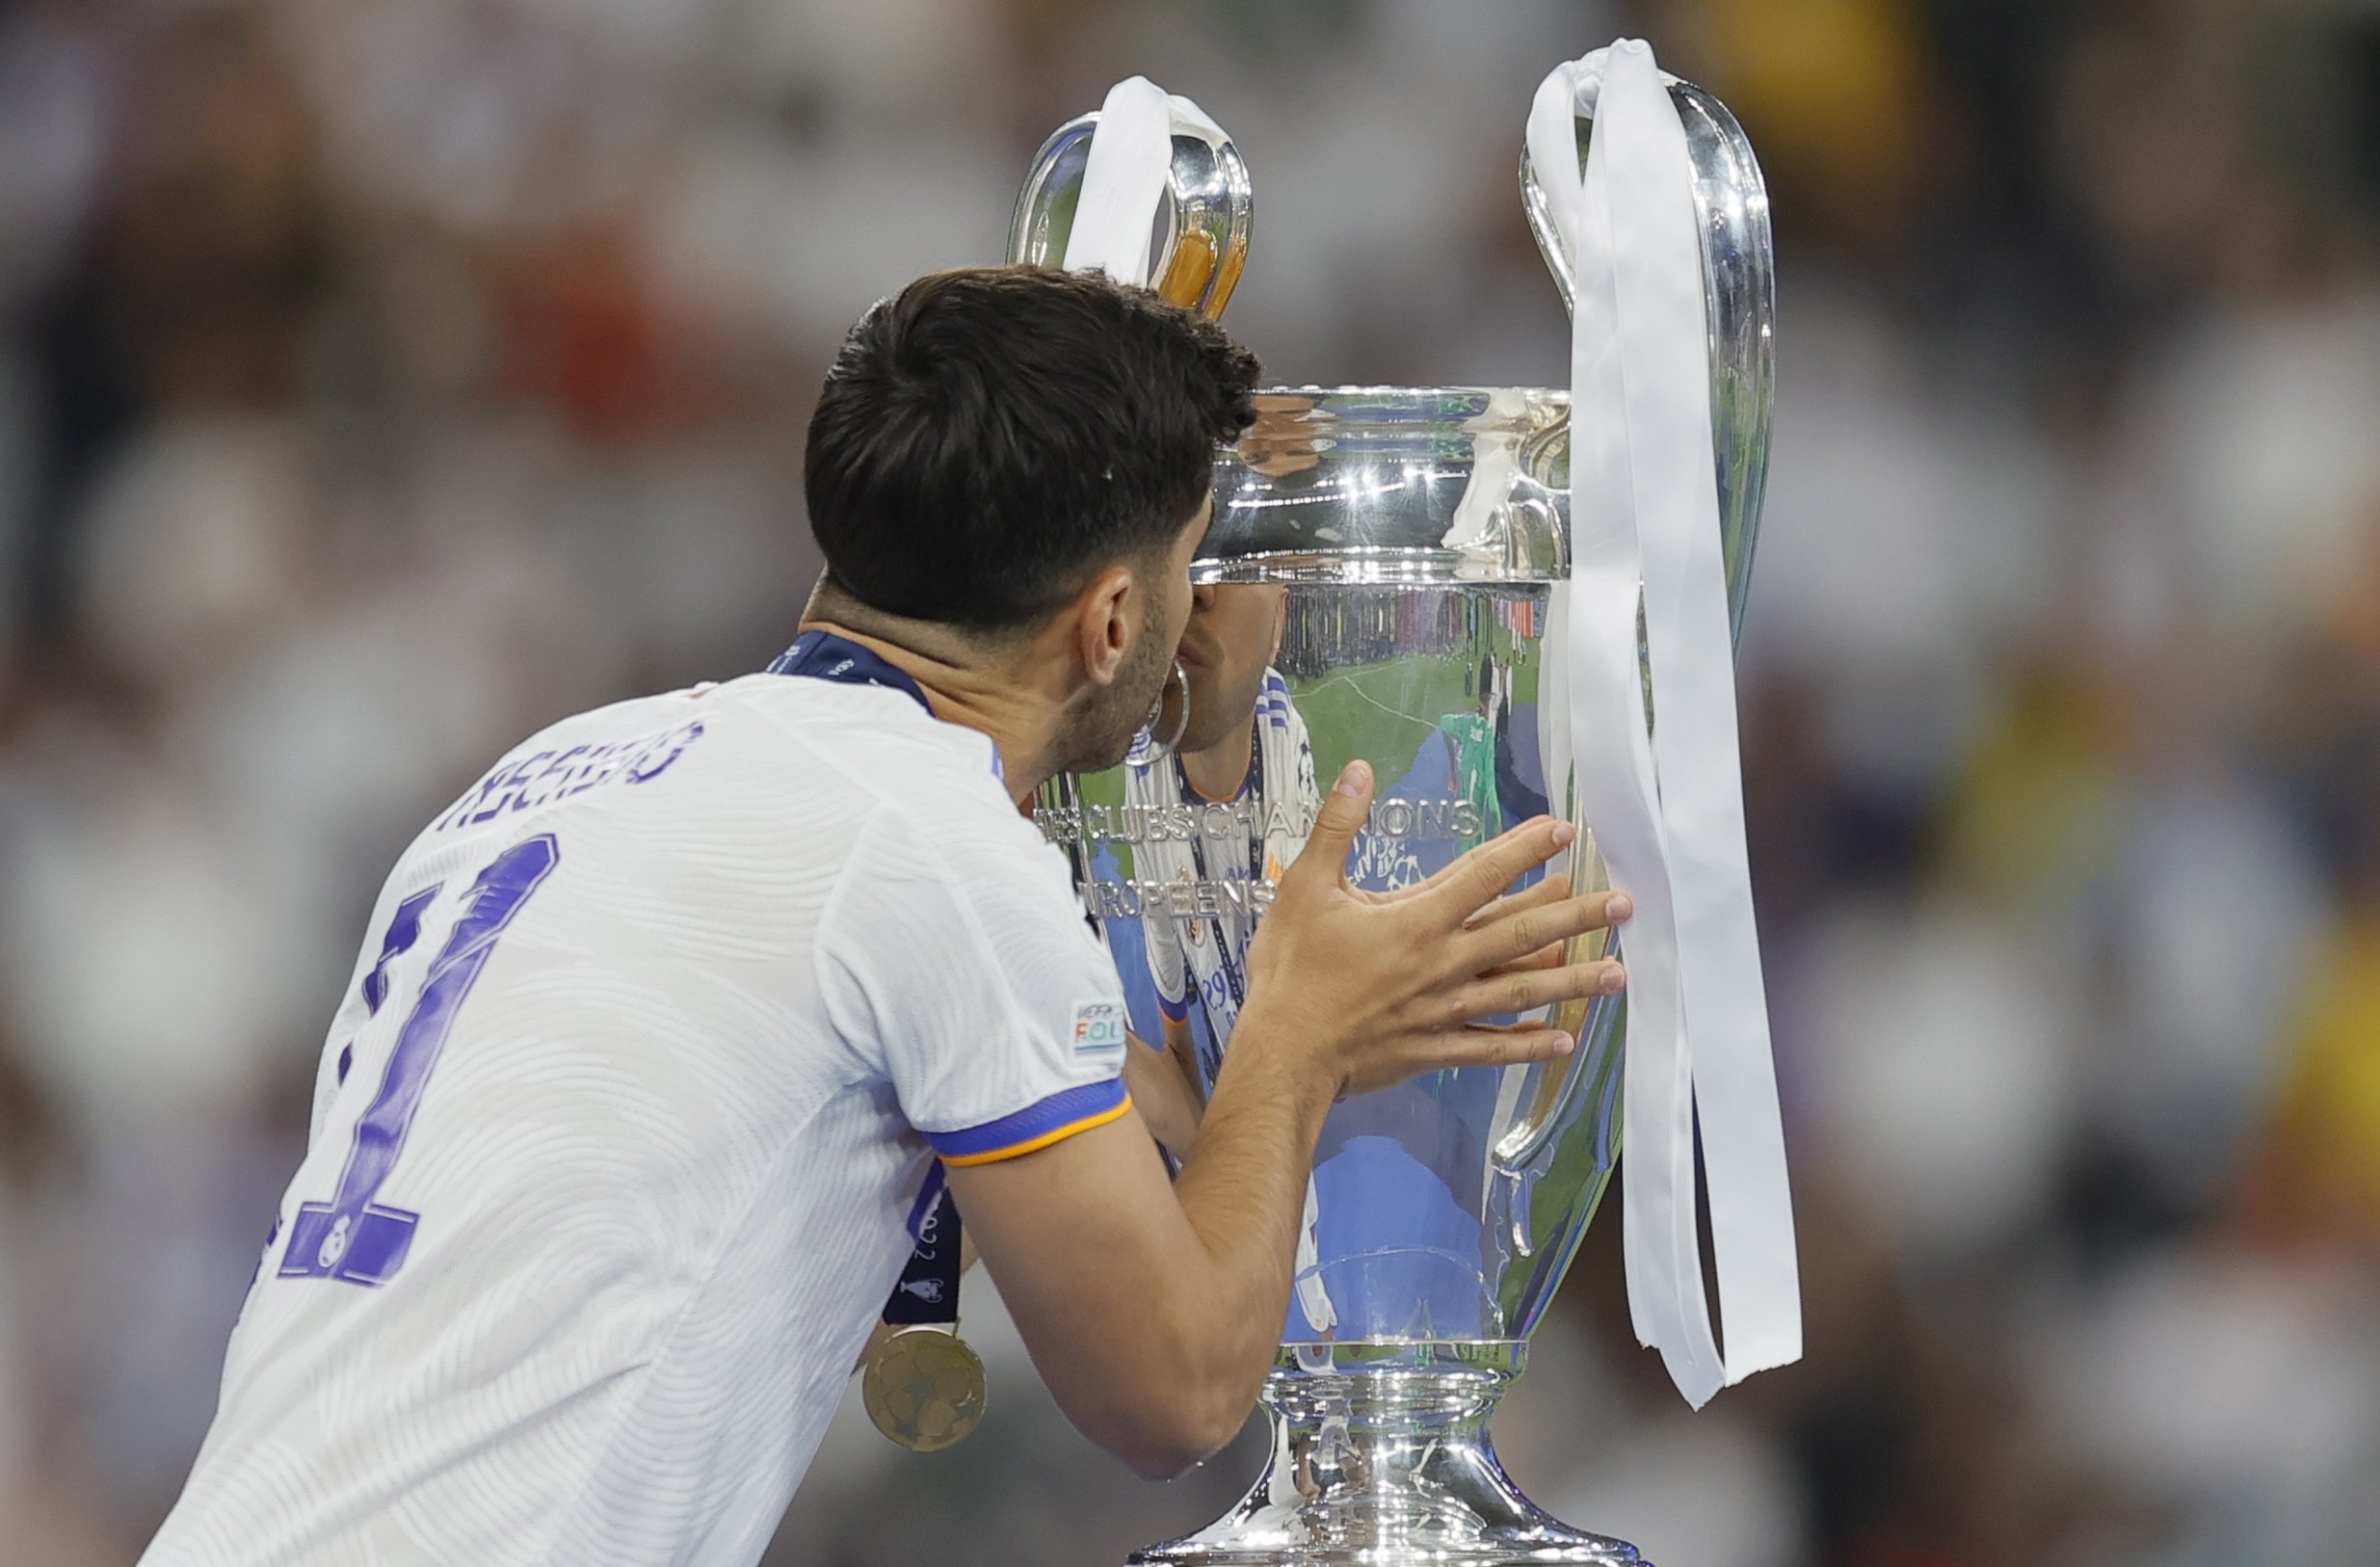 Marco Asensio, ofert pel Reial Madrid per rebaixar el preu del fitxatge clau de Florentino Pérez